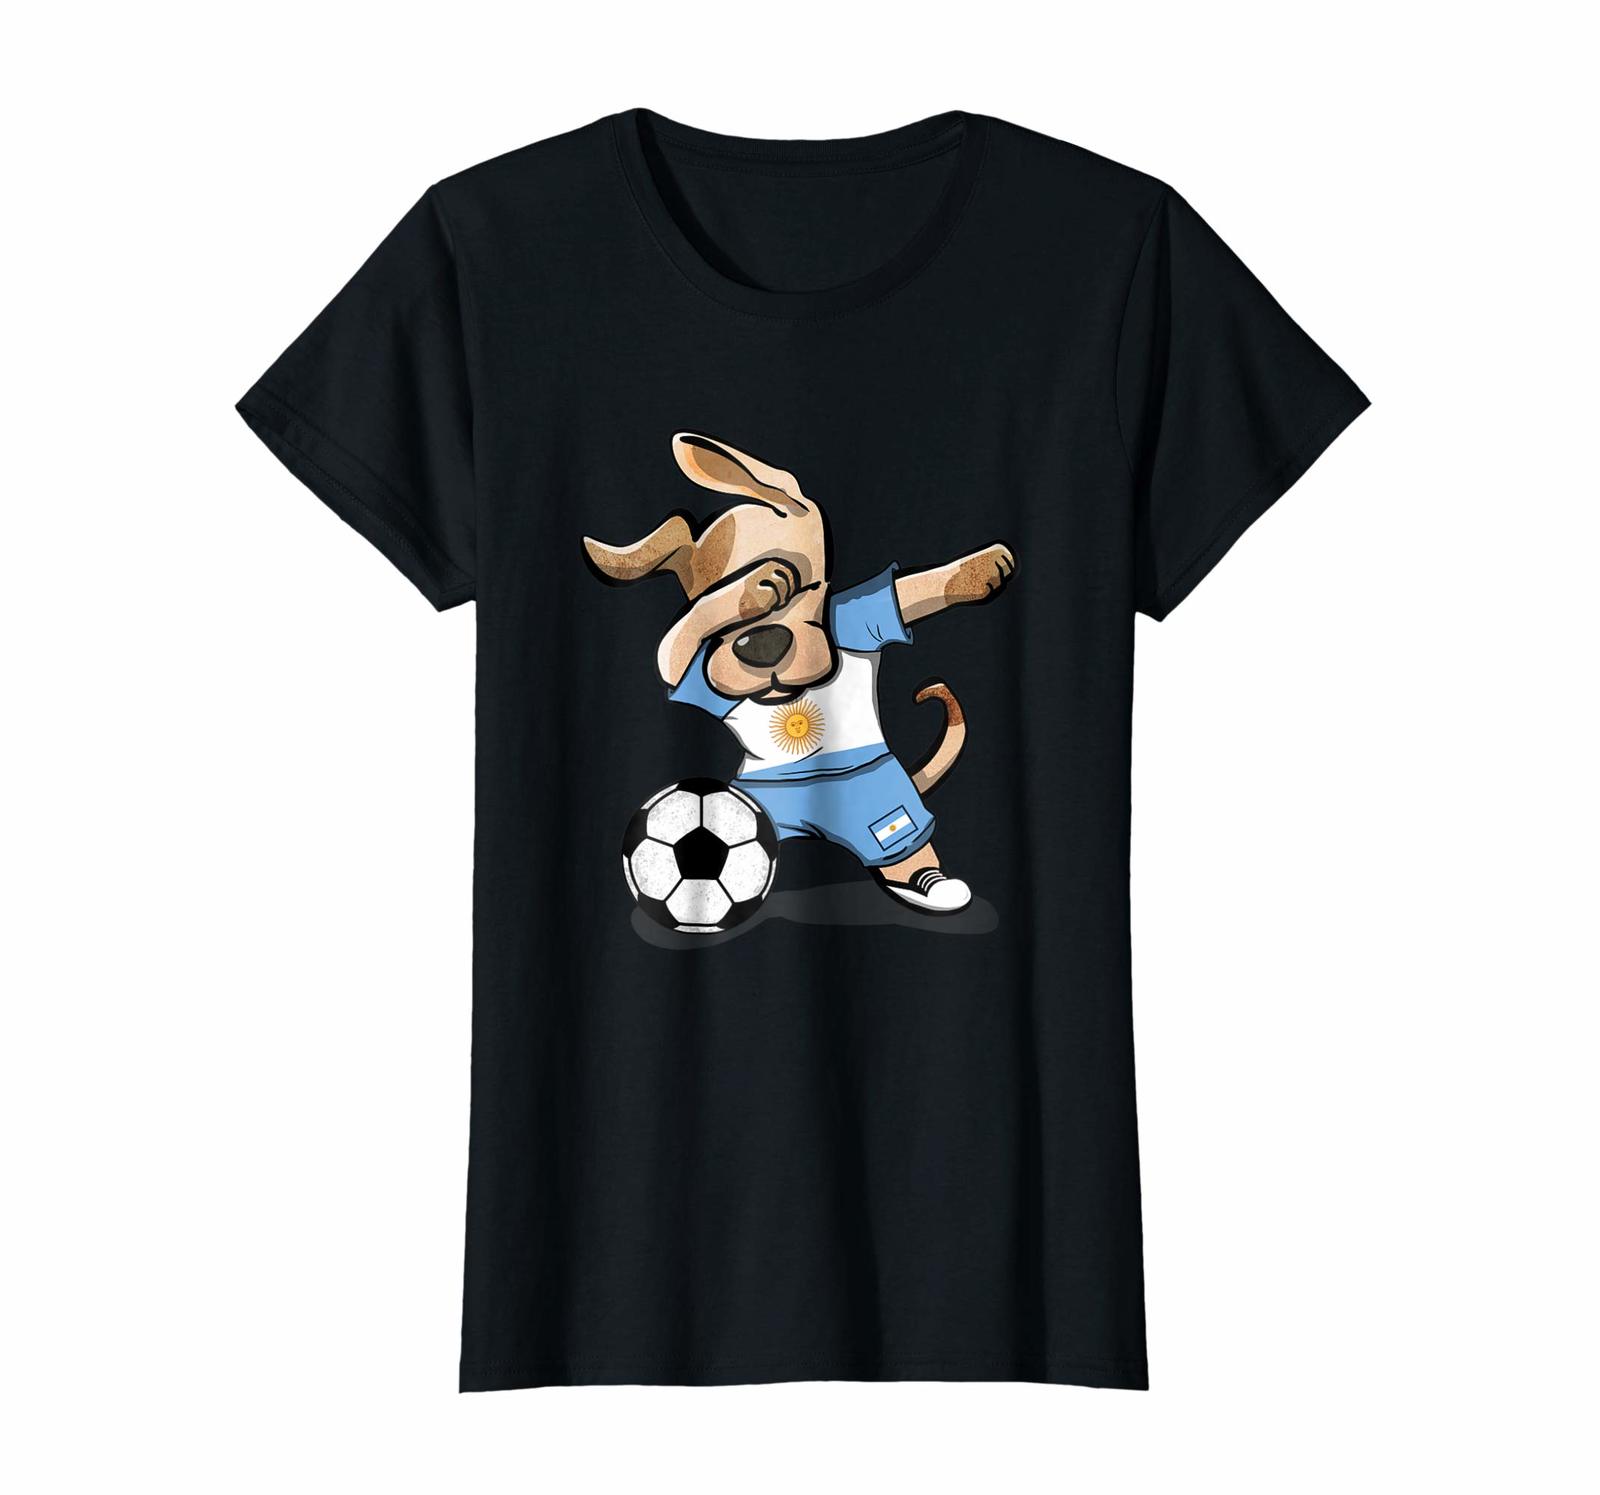 Dog Fashion - Dog Dabbing Soccer Argentina Jersey Shirt Argentina Football Wowen